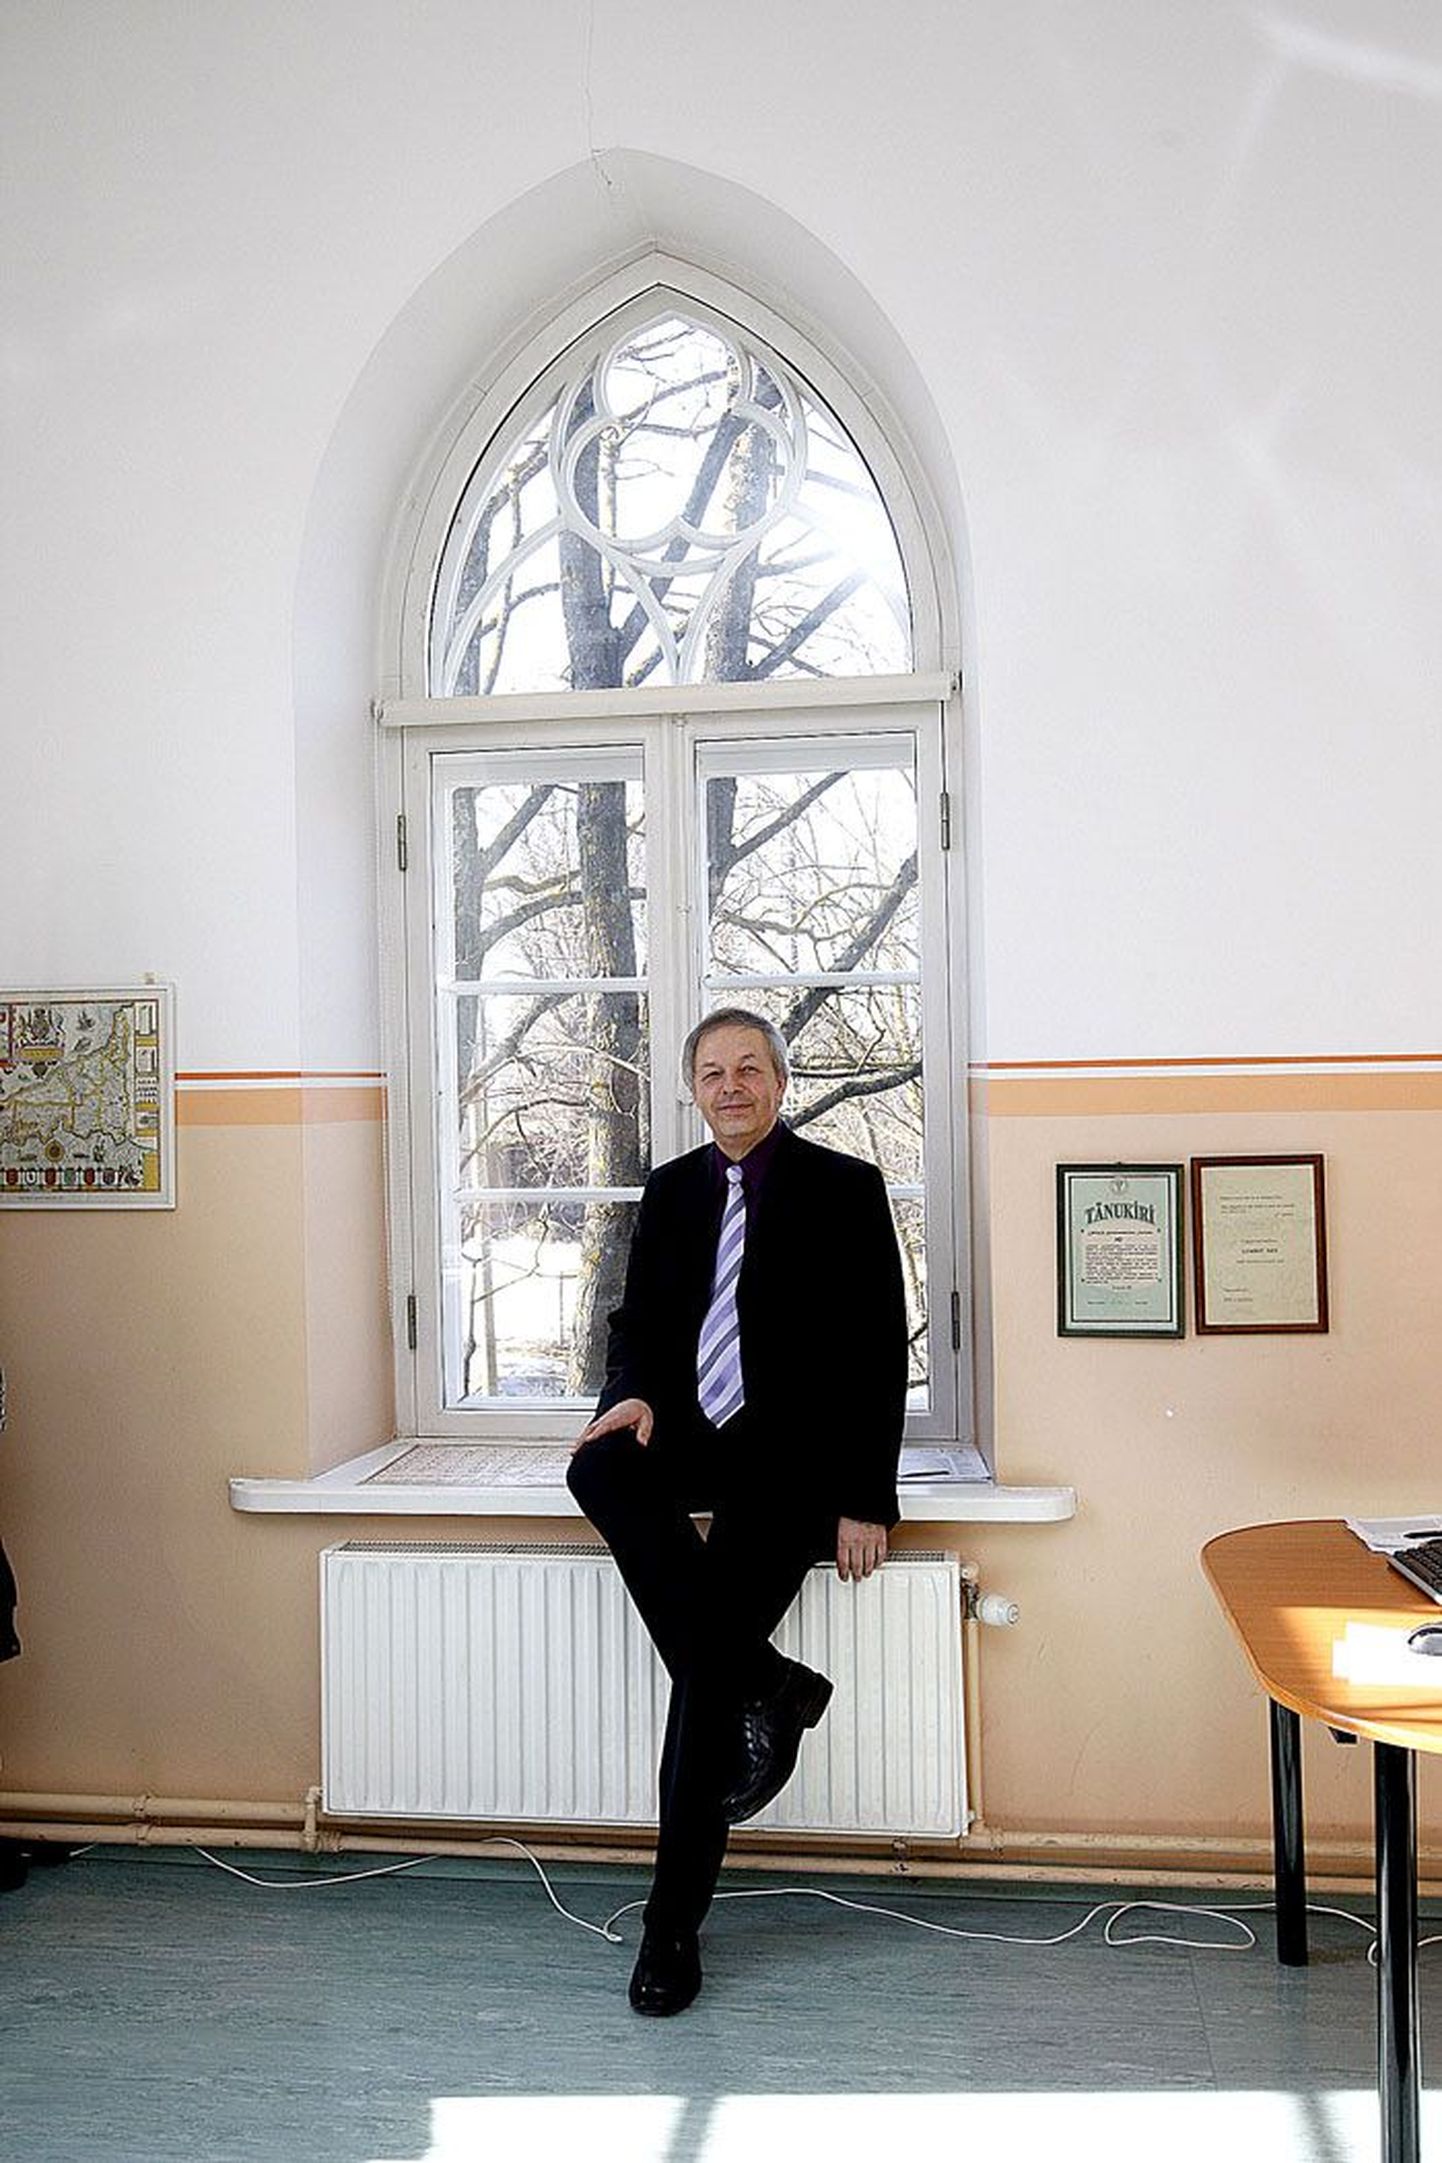 Tallinna Tehnikaülikooli Tartu kolledži direktor Lembit Nei istub Puiestee tänaval oma kabineti aknal, kust avaneb samasugune vaa­de nagu mõnest Oxfordi ülikooli õppehoonest.